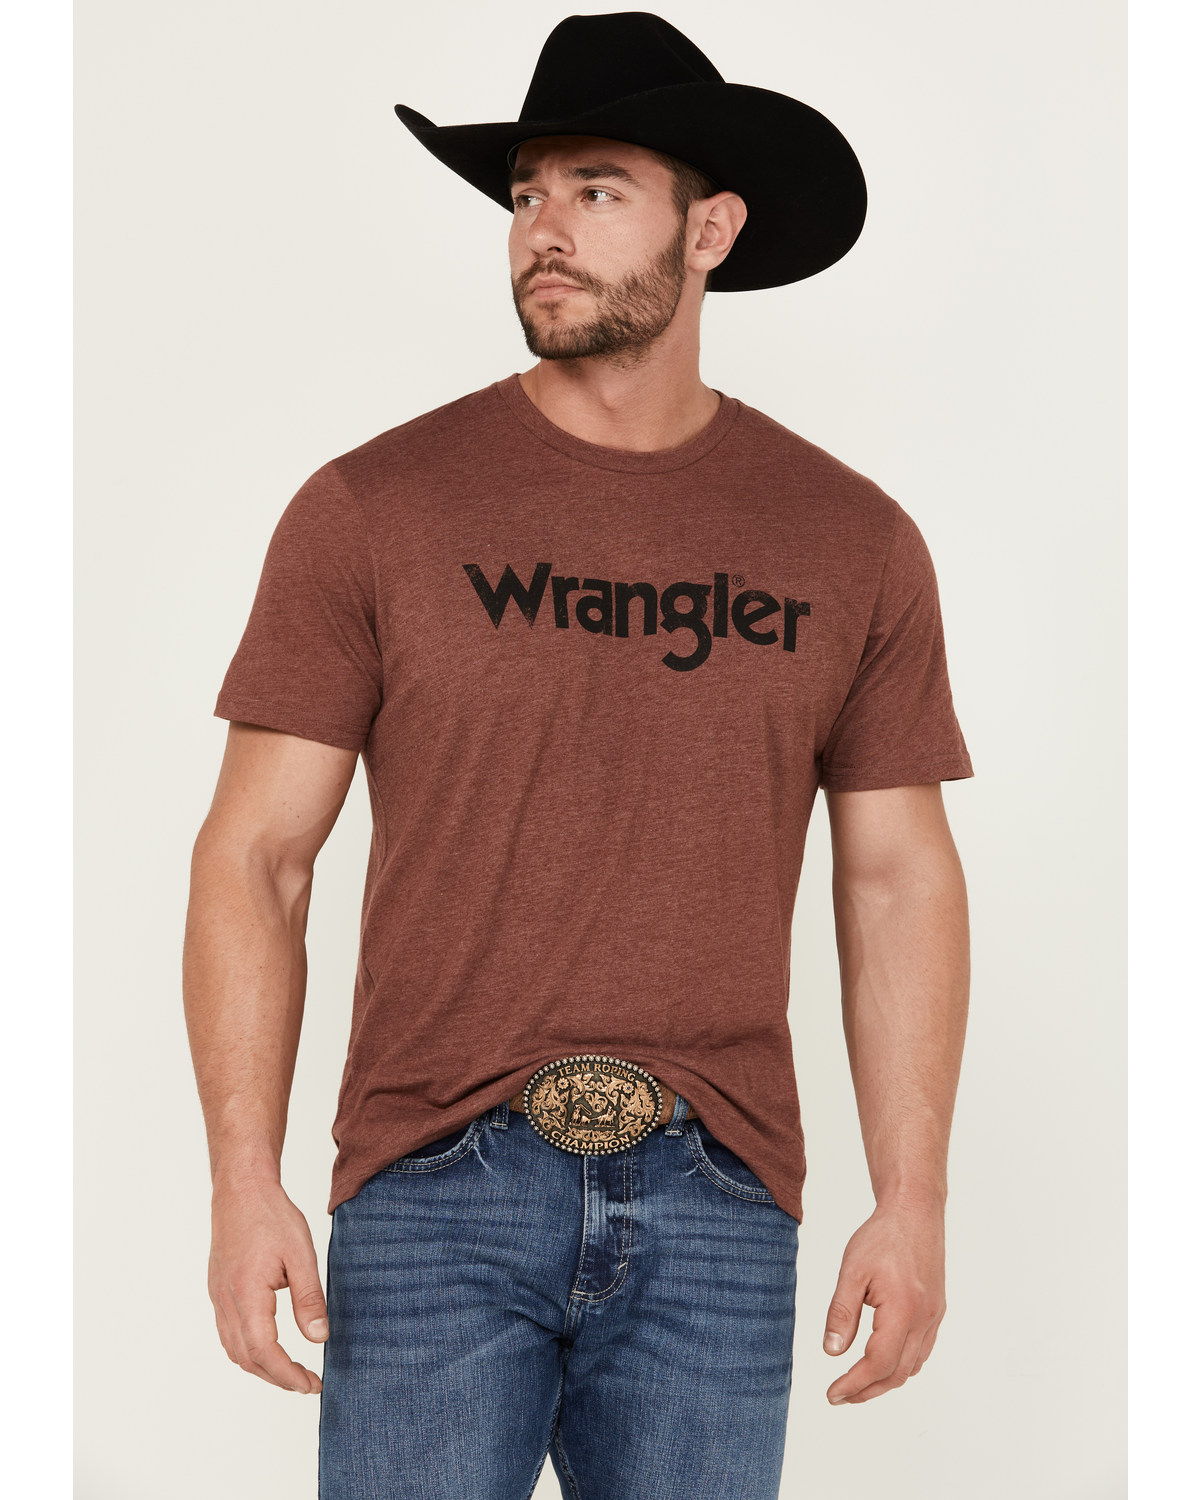 Wrangler Men's Basic Logo Short Sleeve Graphic Print T-Shirt